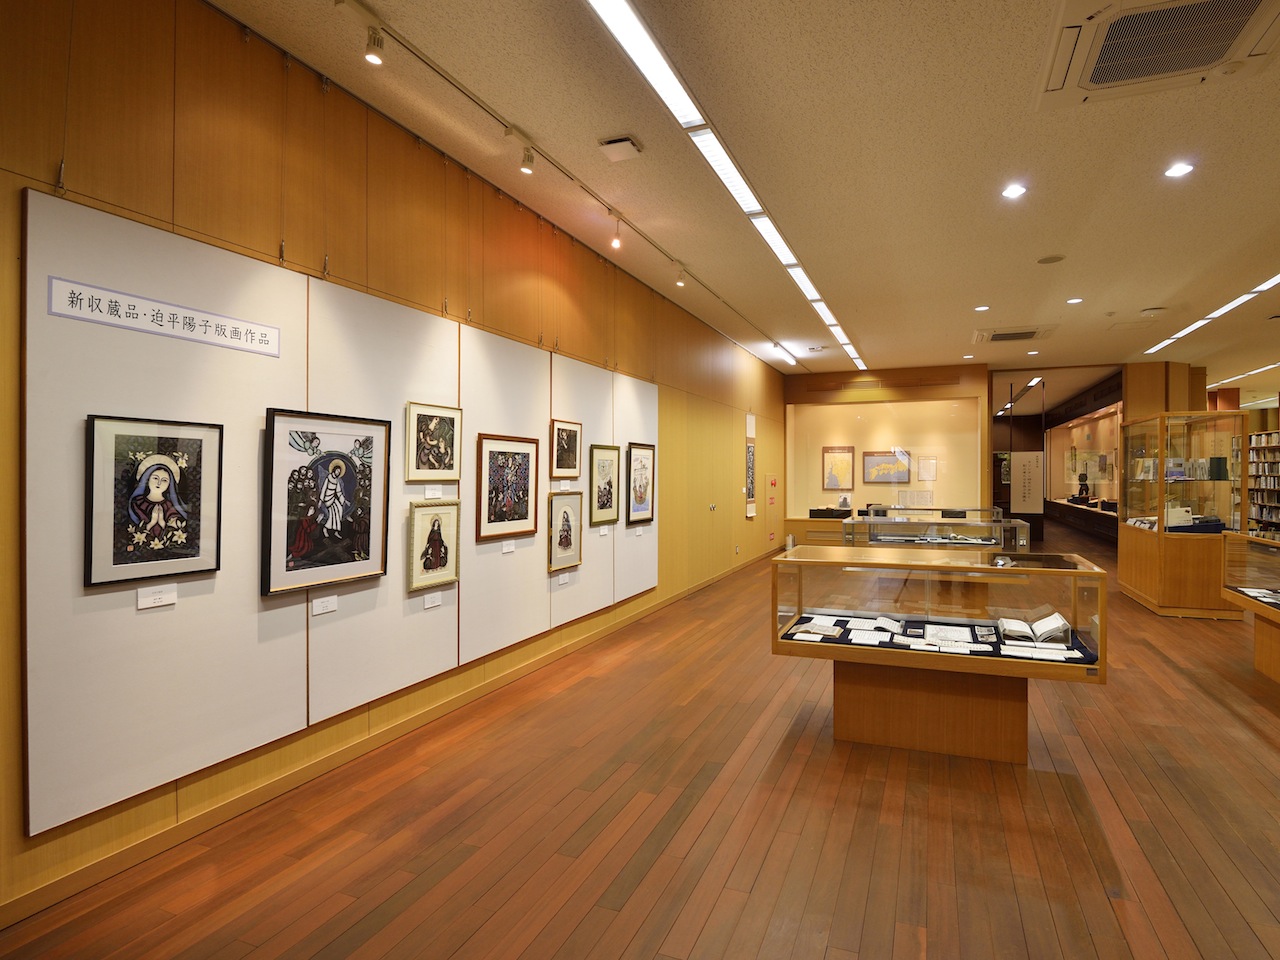 長崎純心大学博物館。キリシタン関連資料をはじめ、本学にゆかりのある作家の作品や長崎の美術工芸など長崎関連資料を中心に保存収集を行っています。